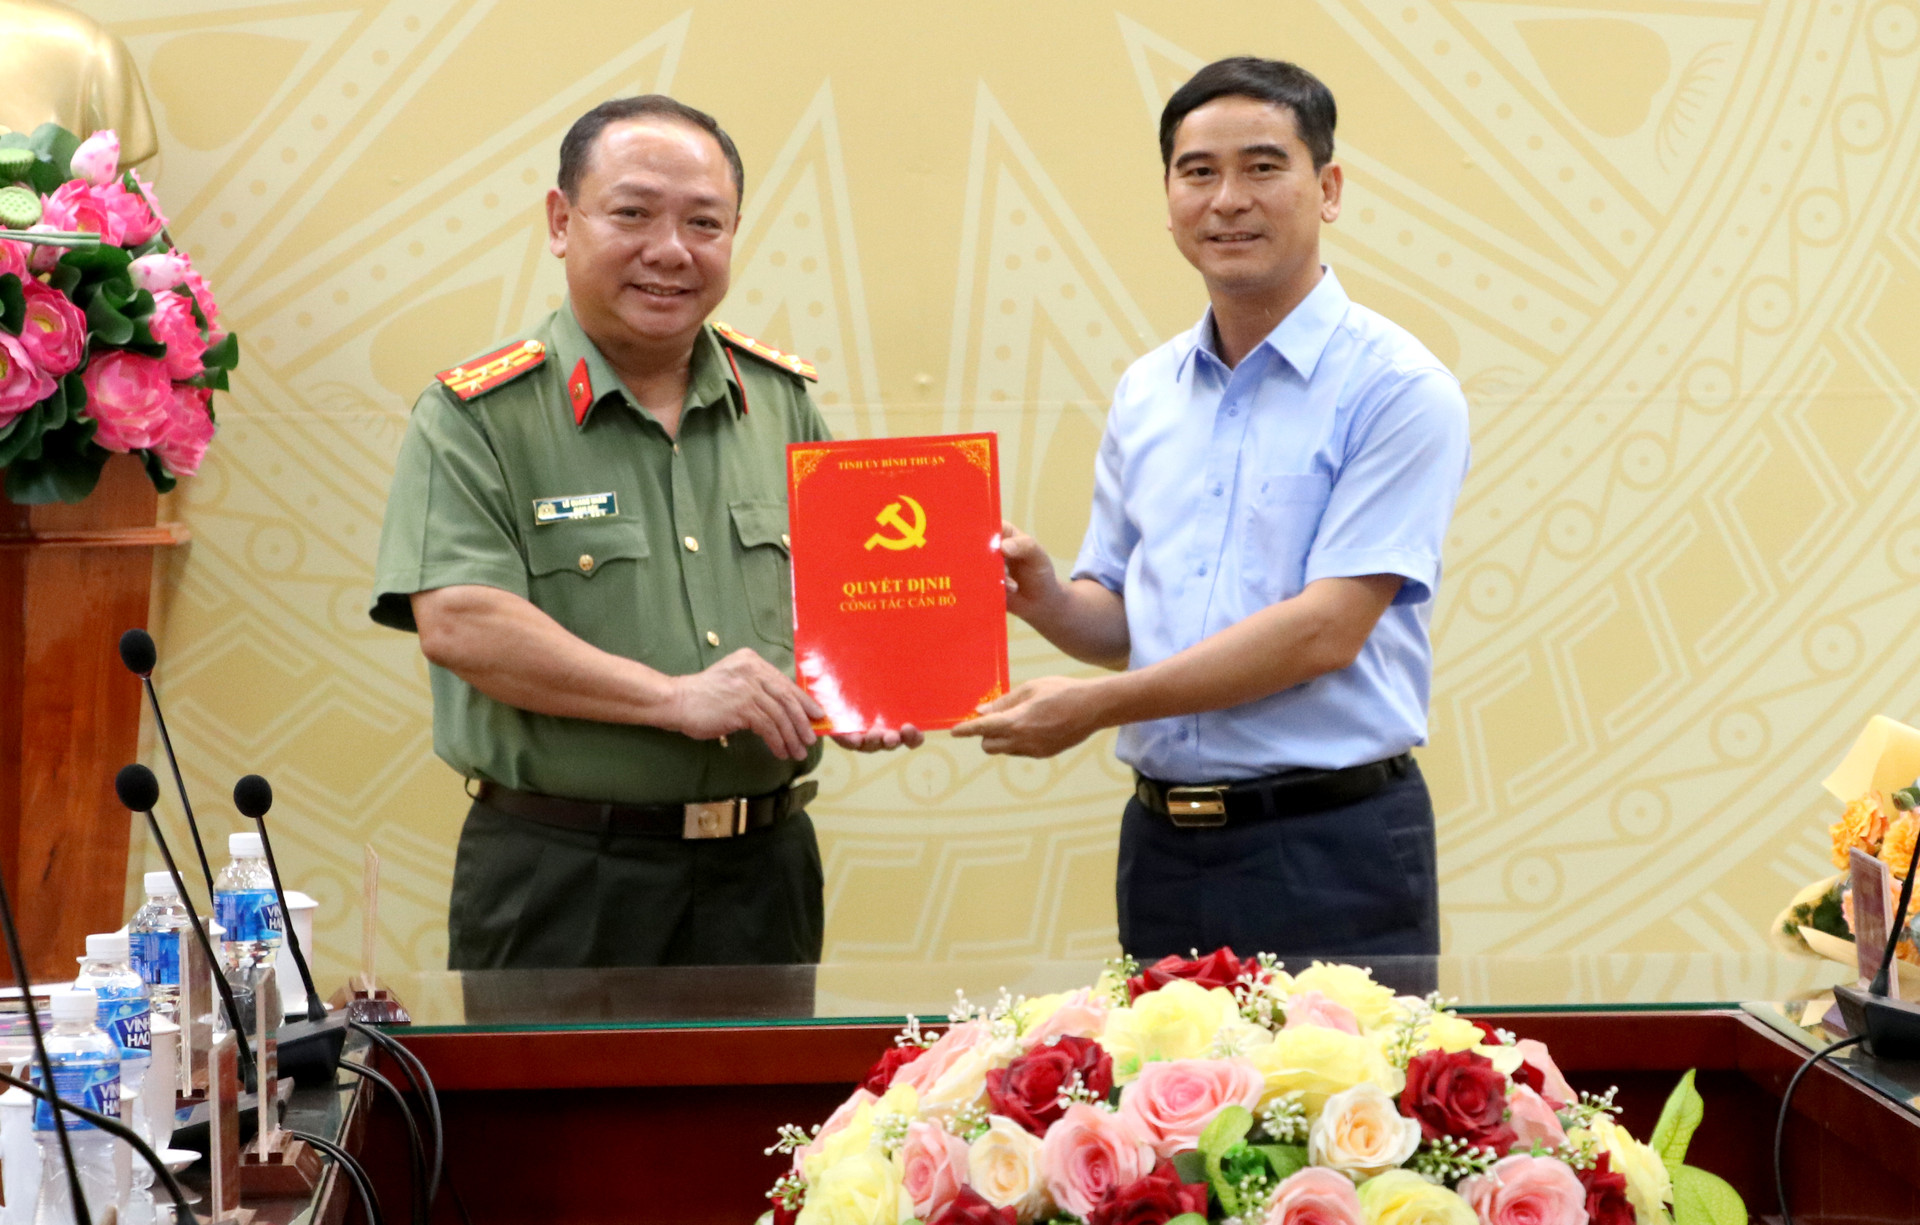 Đại tá Lê Quang Nhân, Giám đốc Công an tỉnh được chỉ định tham gia Ban Thường vụ Tỉnh ủy Bình Thuận  - Ảnh 1.